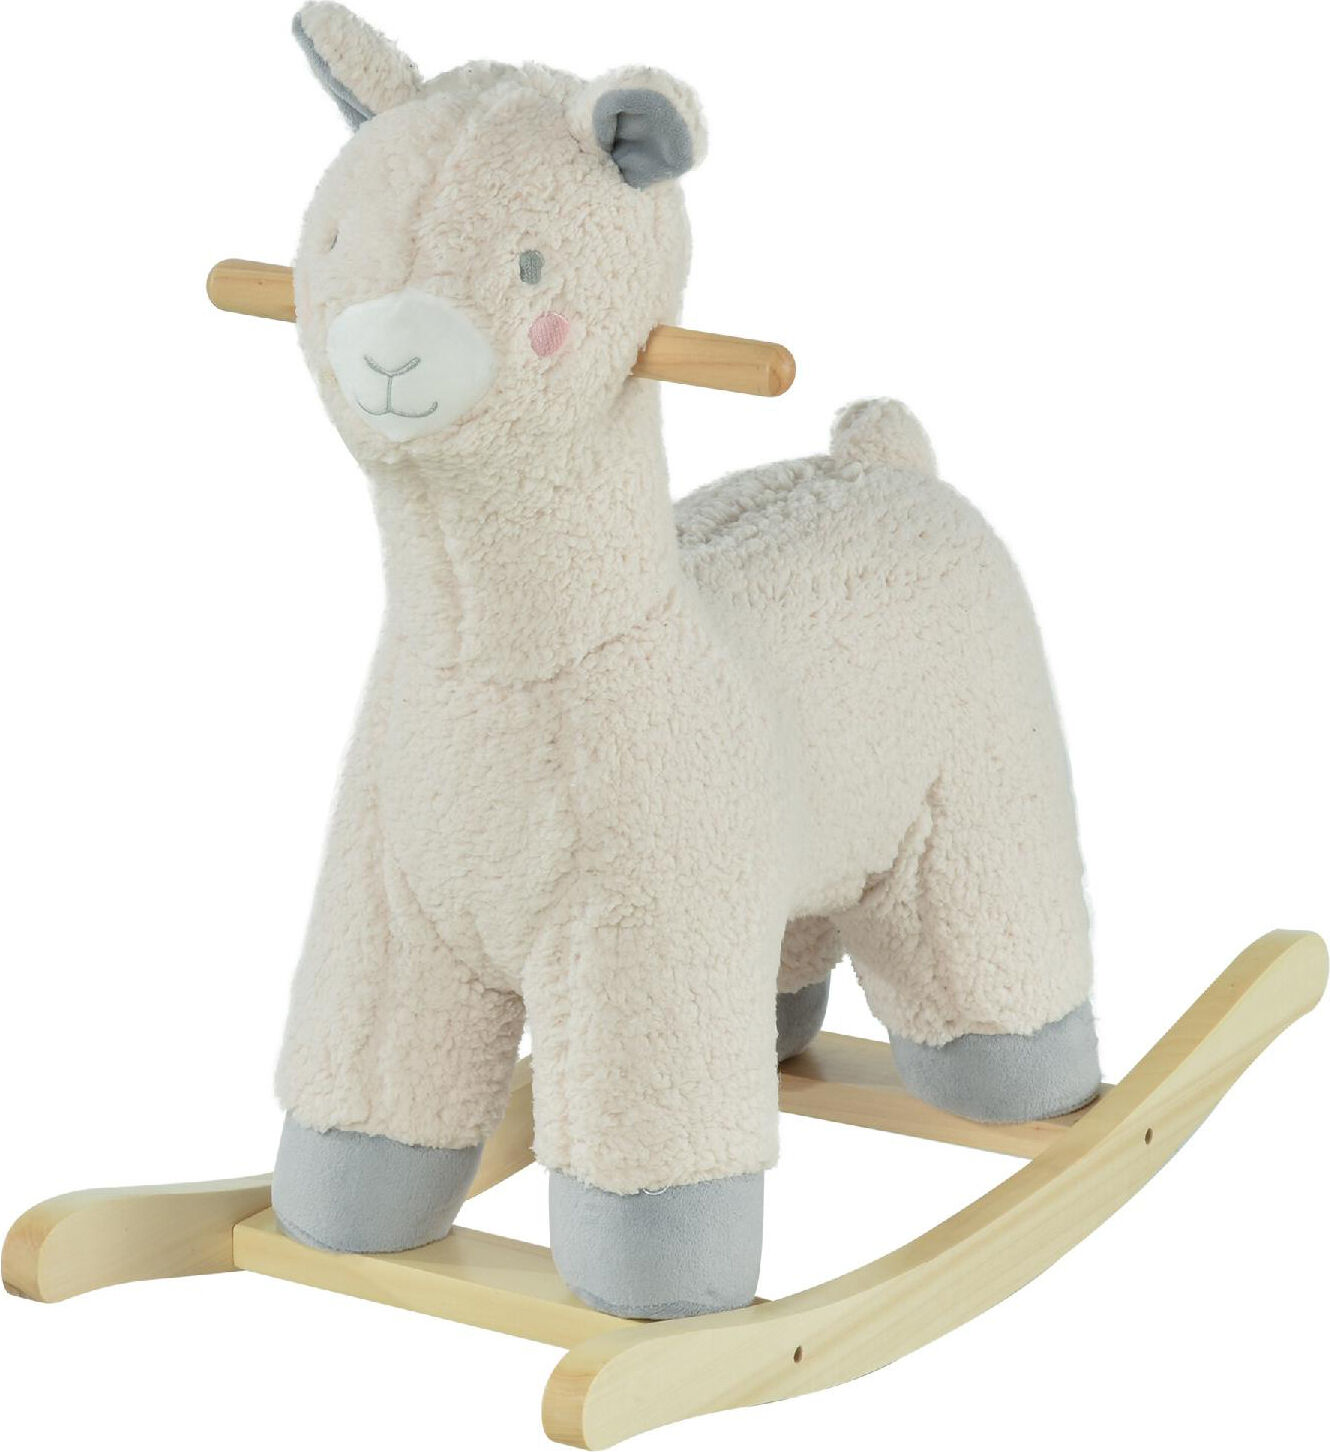 dechome 108/330 dondolo alpaca peluche in legno con suoni cavalcabile per bambini da 3+ anni colore crema - 108/330